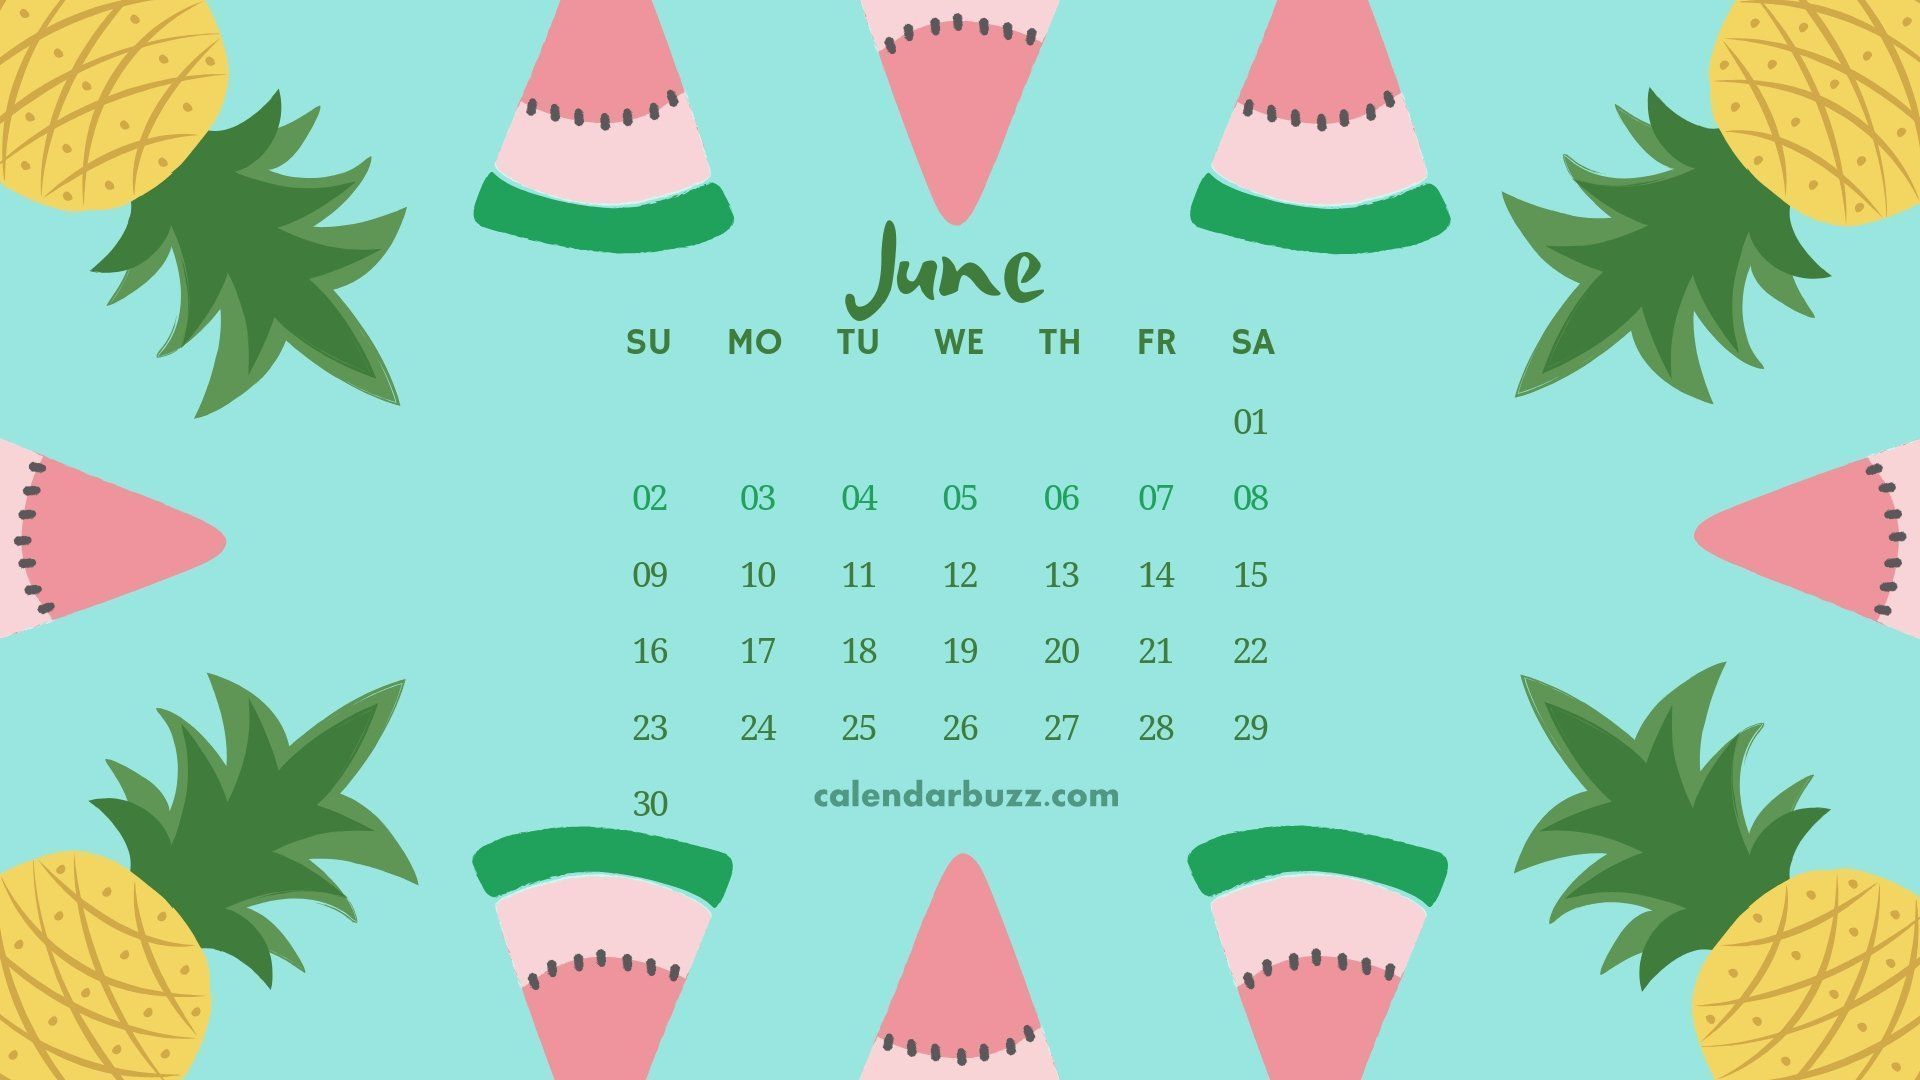 June 2019 Desktop Calendar Wallpaper. Calendar wallpaper, Desktop